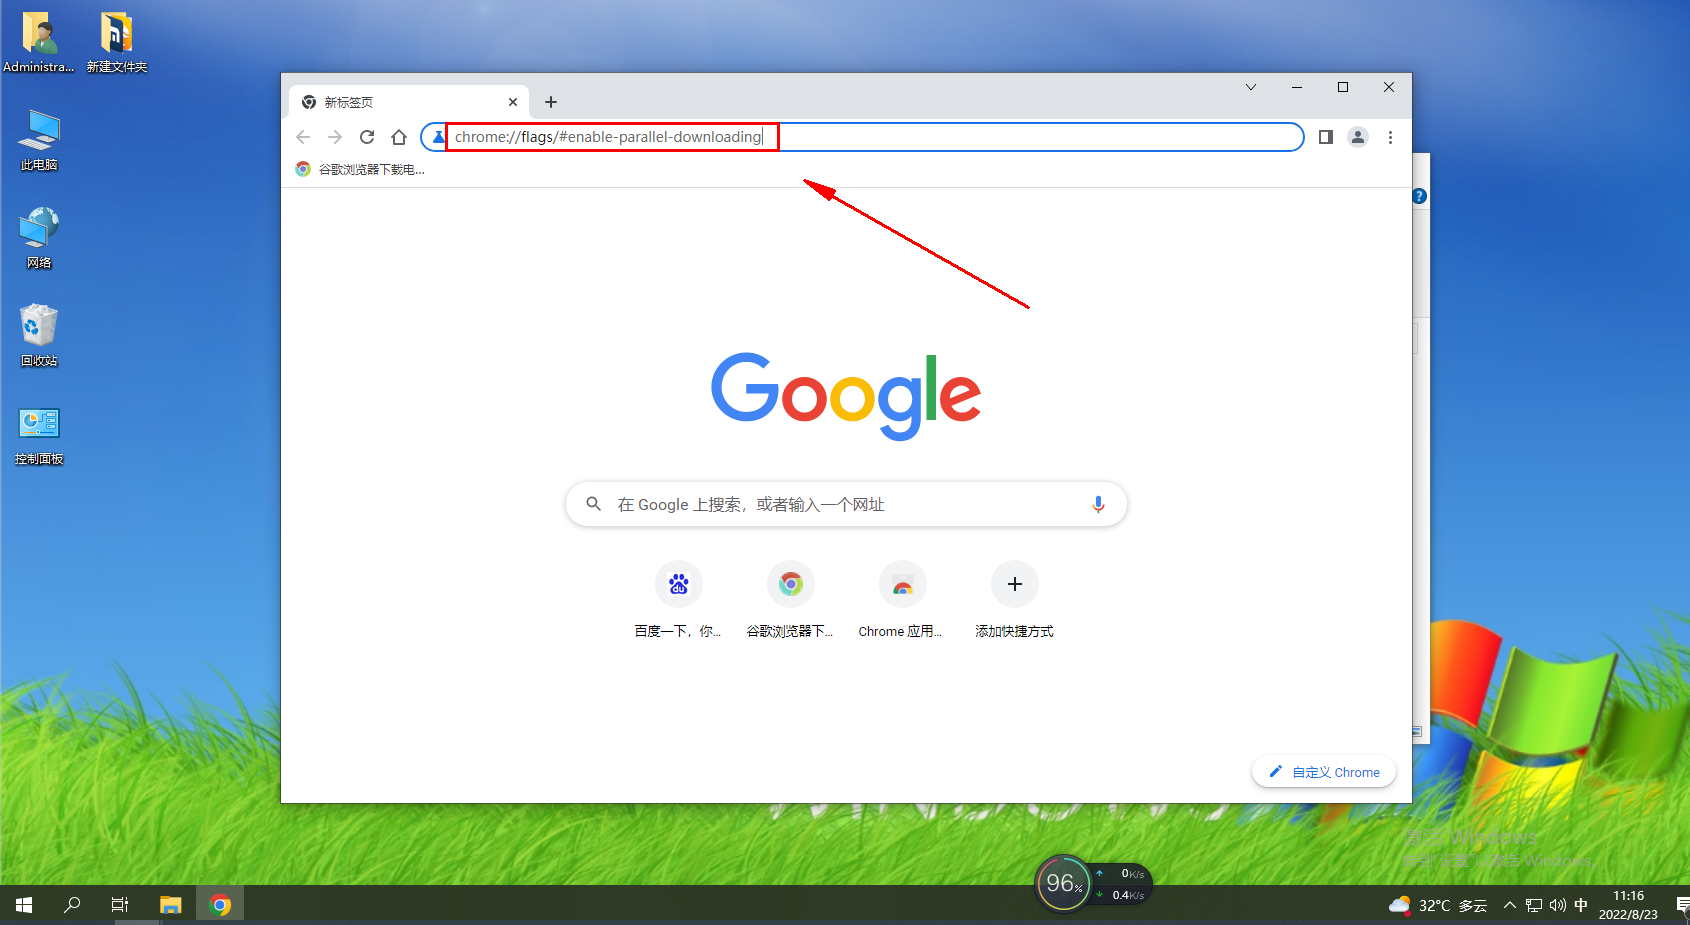 如何设置谷歌浏览器启动时打开新标签页-设置谷歌浏览器启动时打开新标签页方法分享-插件之家